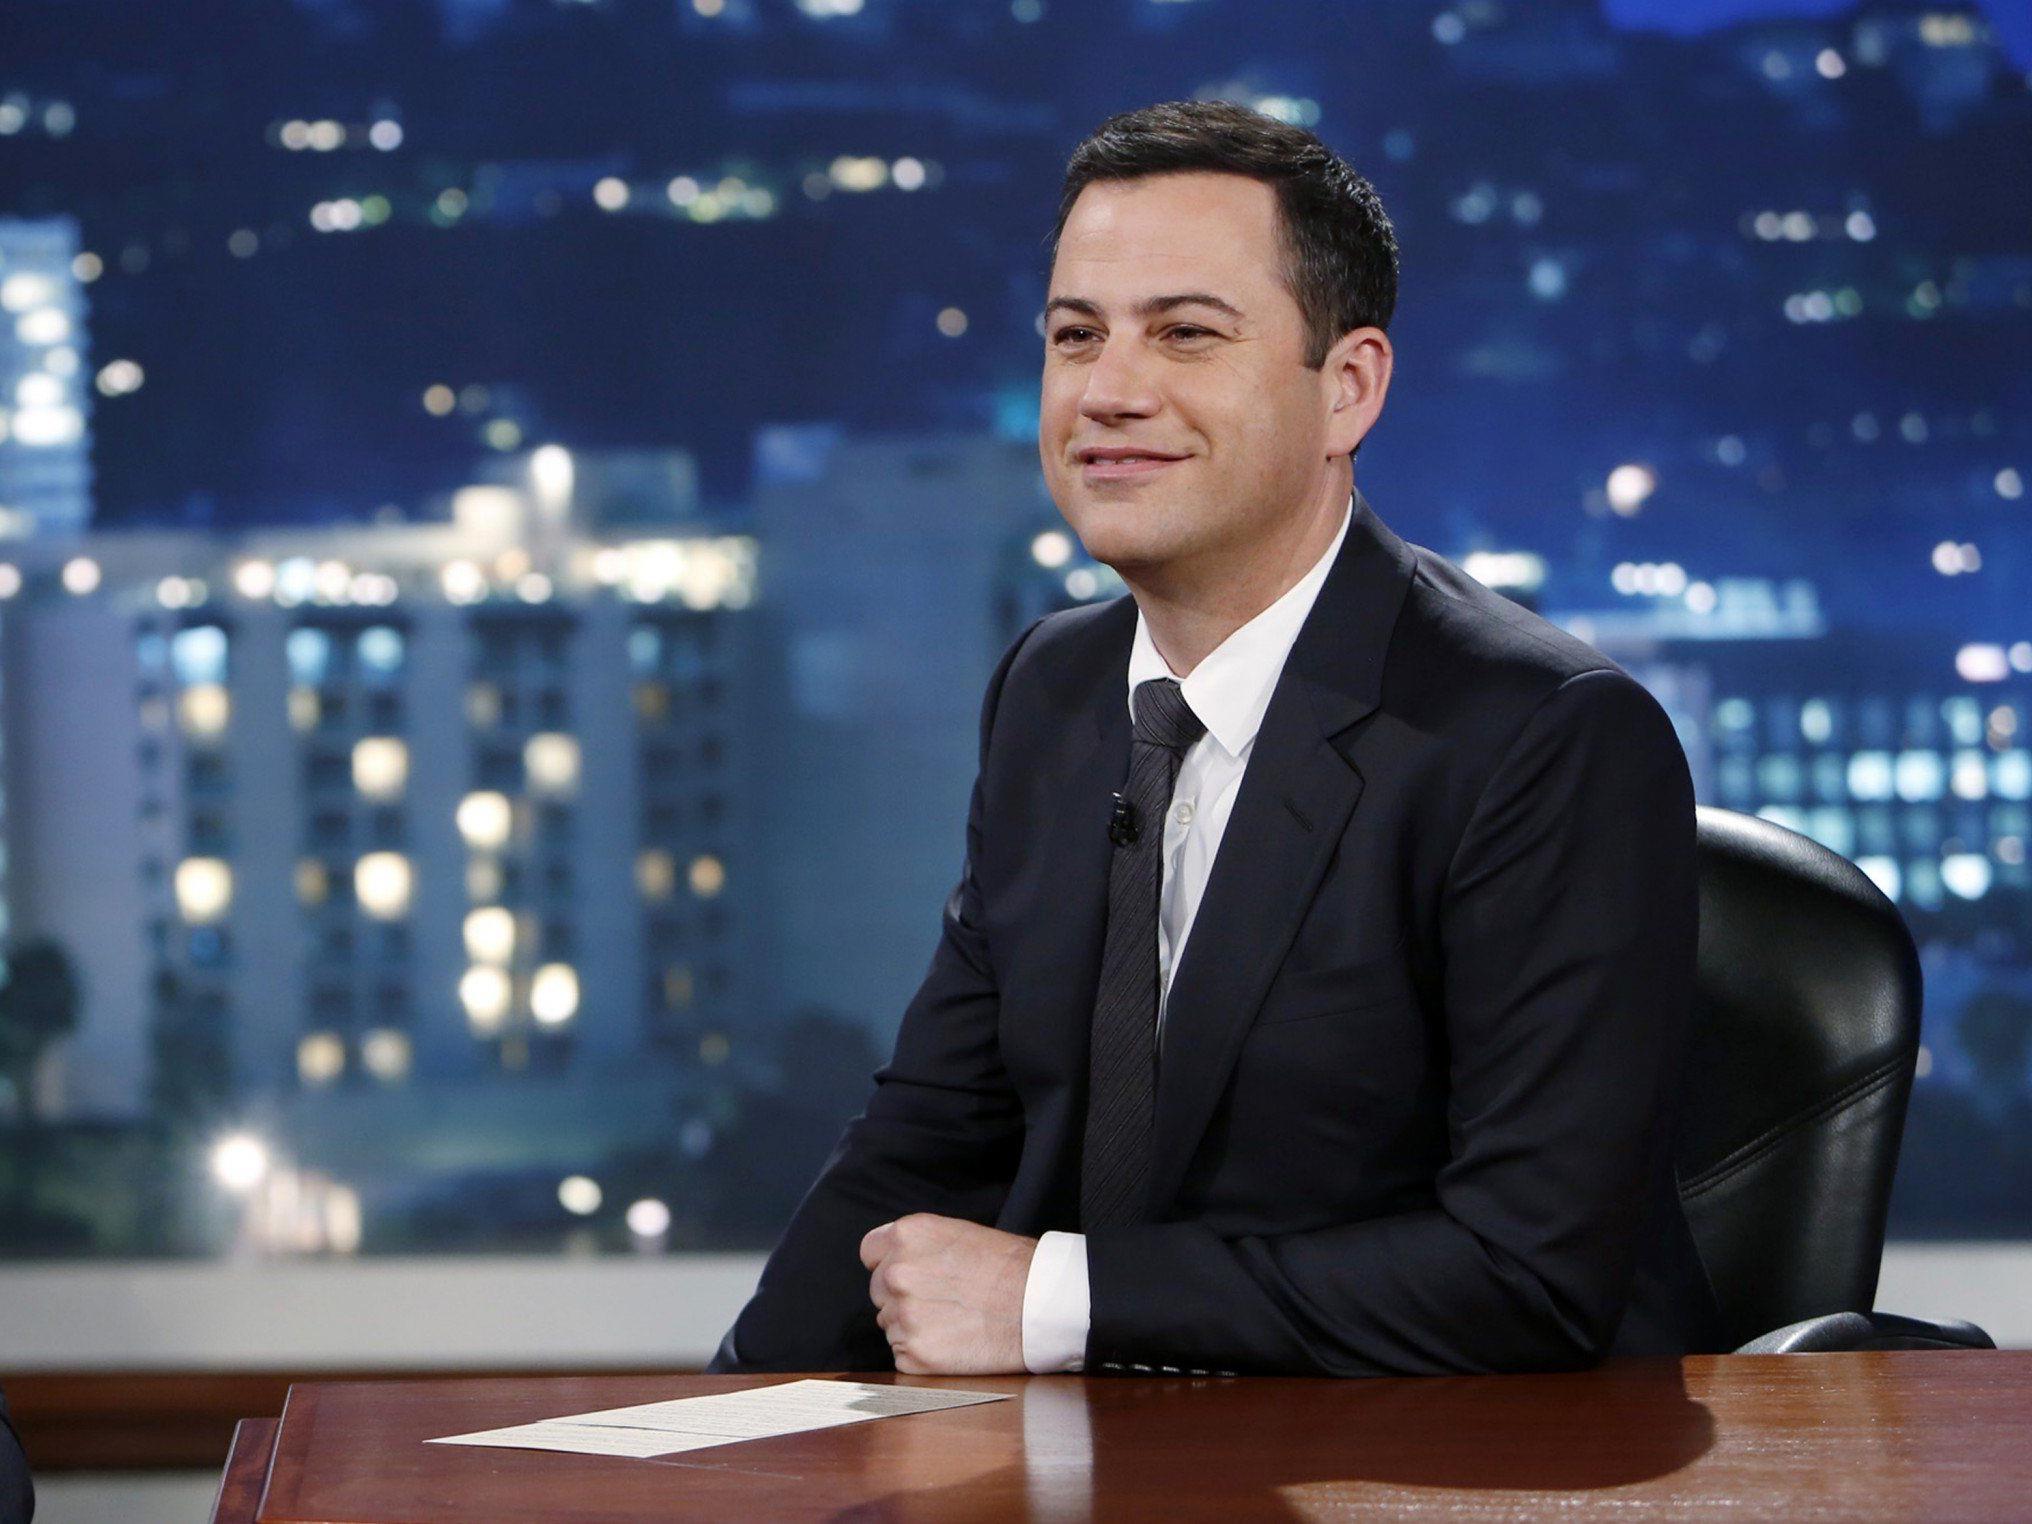 Jimmy Kimmel konfrontiert Stars mit Beleidigungen über Twitter